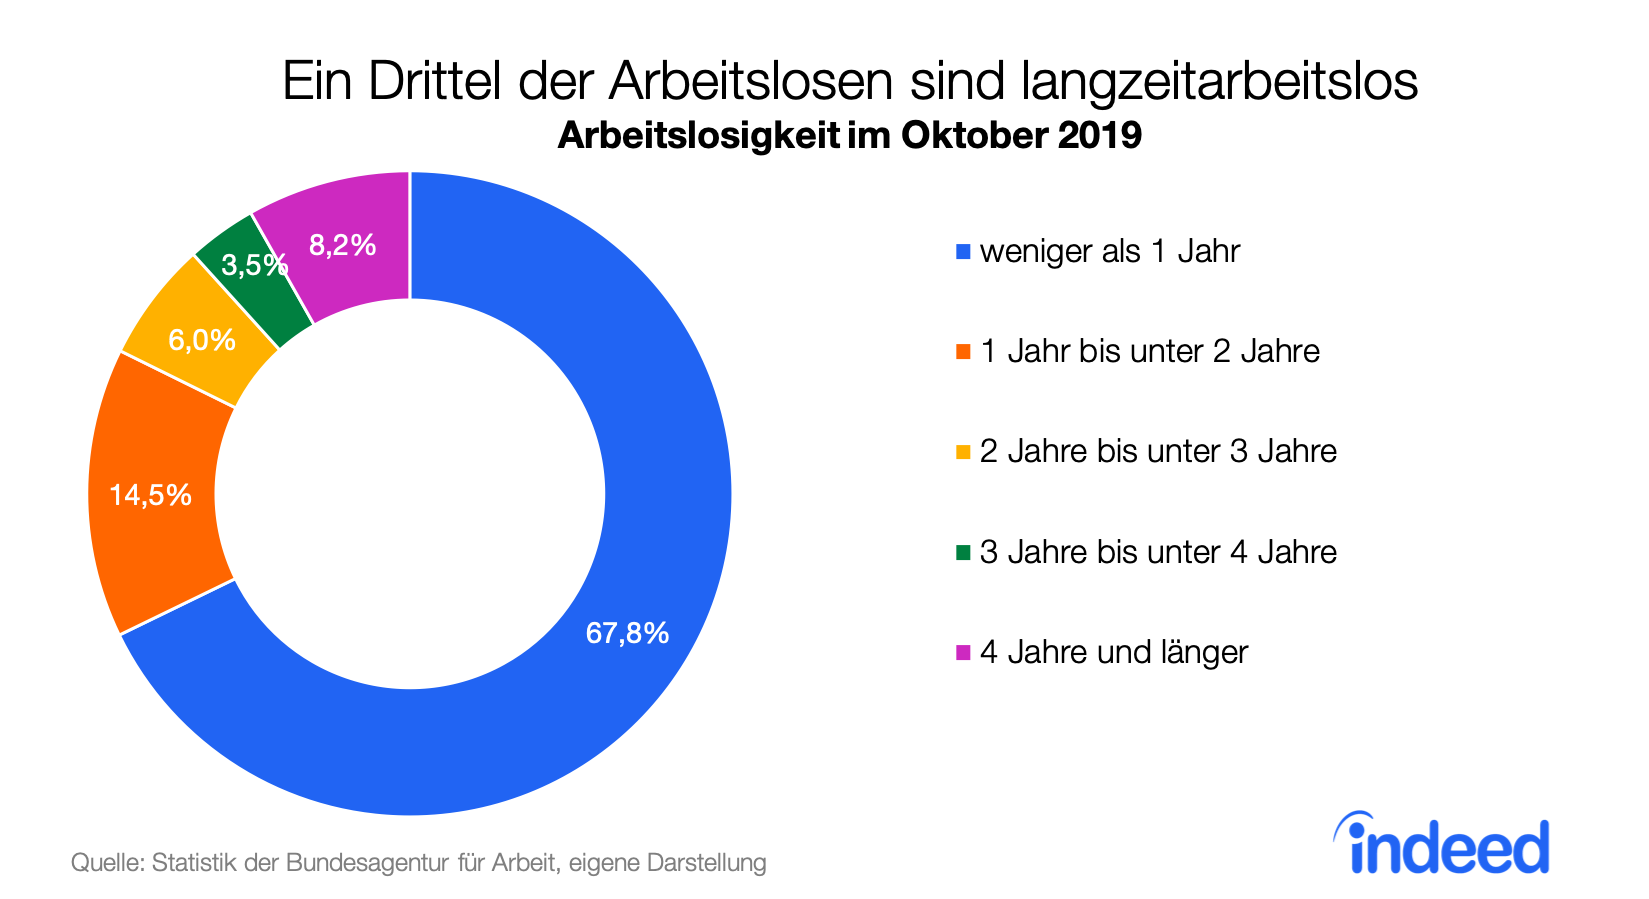 Kreisdiagramm mit Angaben zur Arbeitslosigkeit im Oktober 2019 